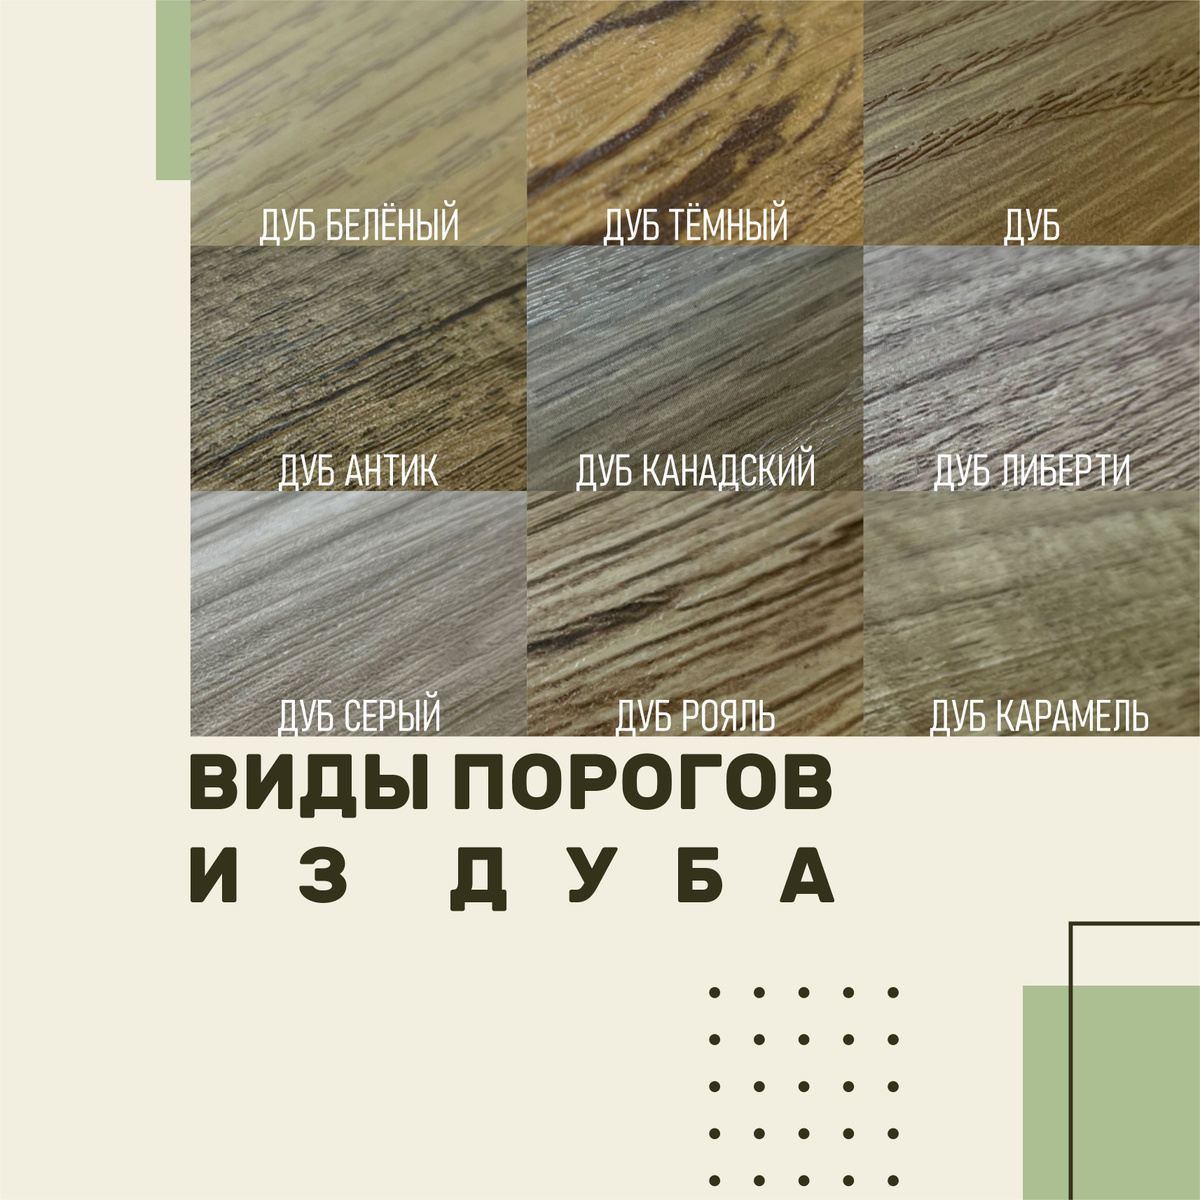 Порожек со скрытым крепежом, ПО-41, ширина 41 мм, представлен в различных цветовых вариантах с имитацией древесной структуры.